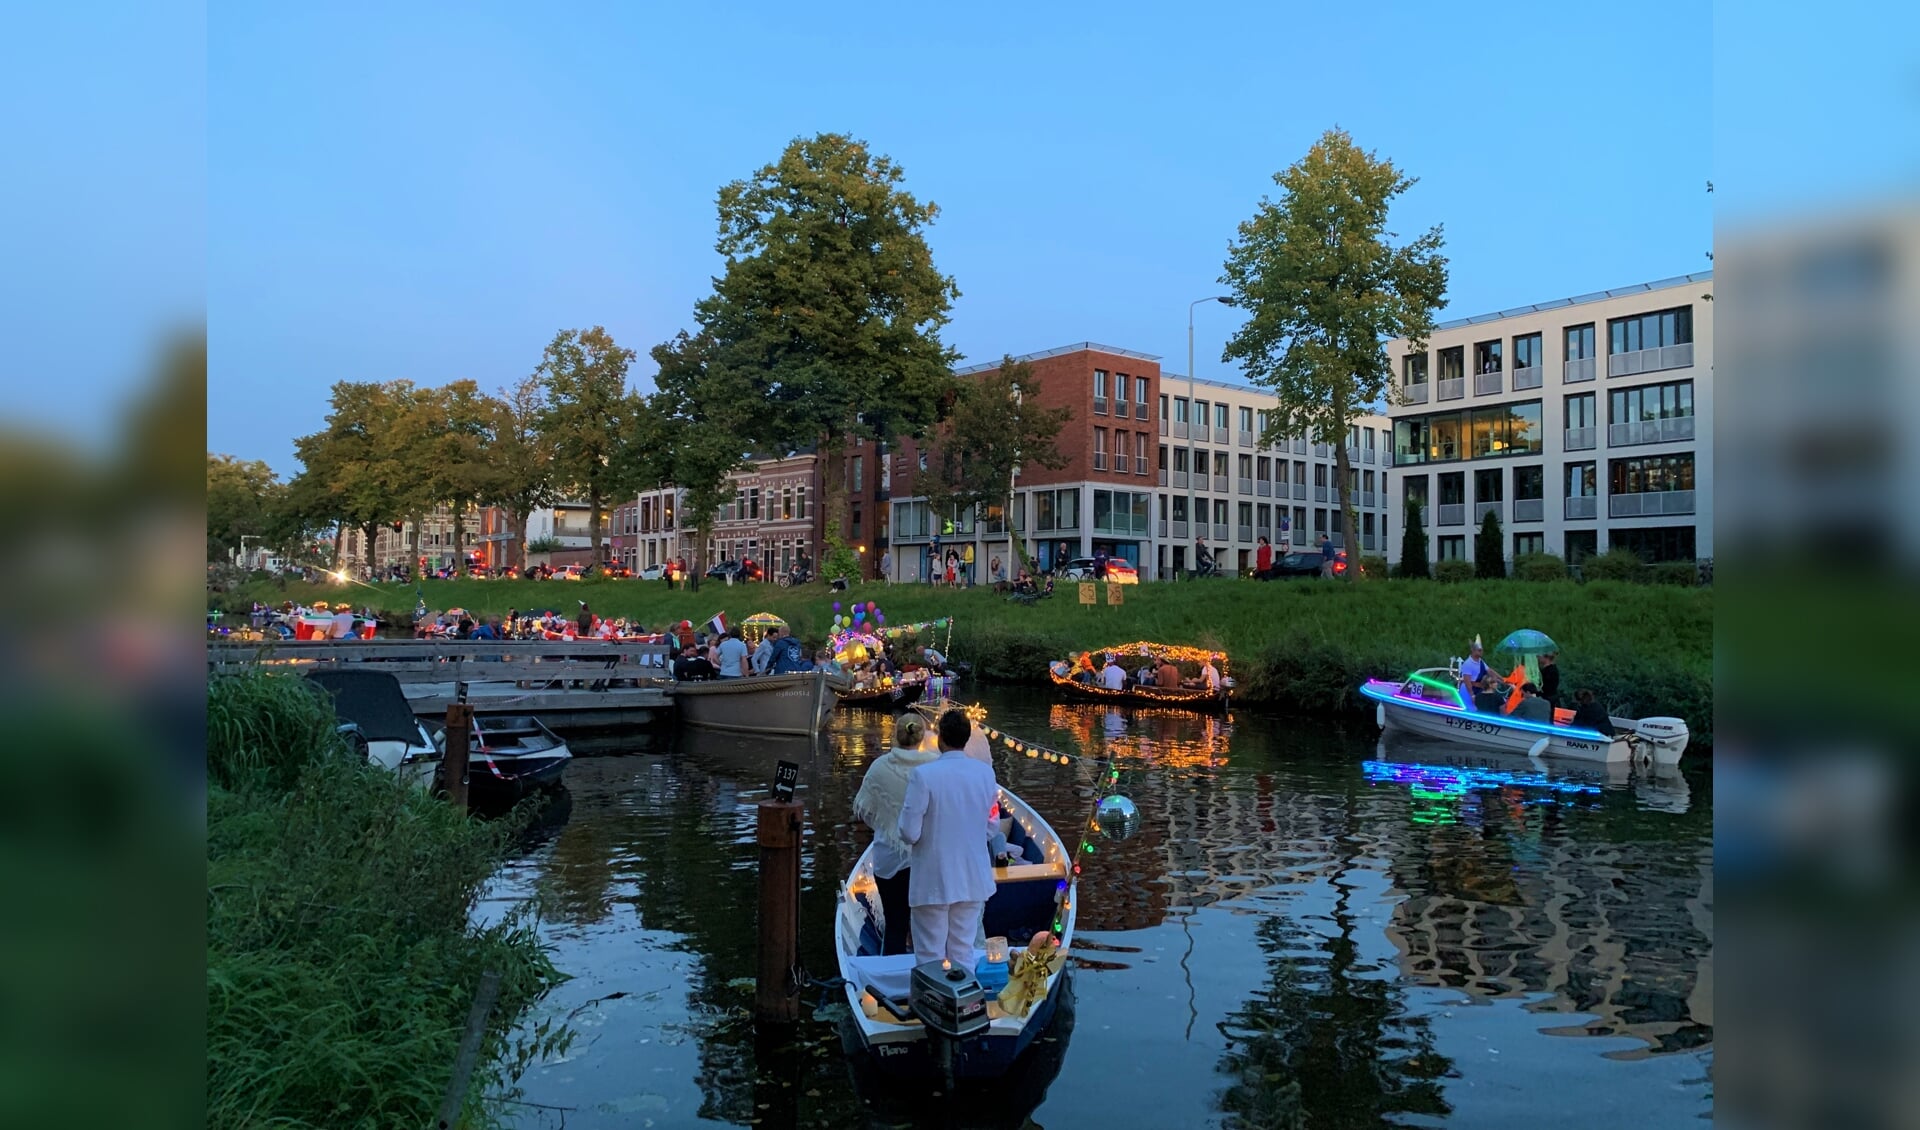 De verlichte bootjes zorgden voor een gezellige sfeer in de Bredase Singels. 